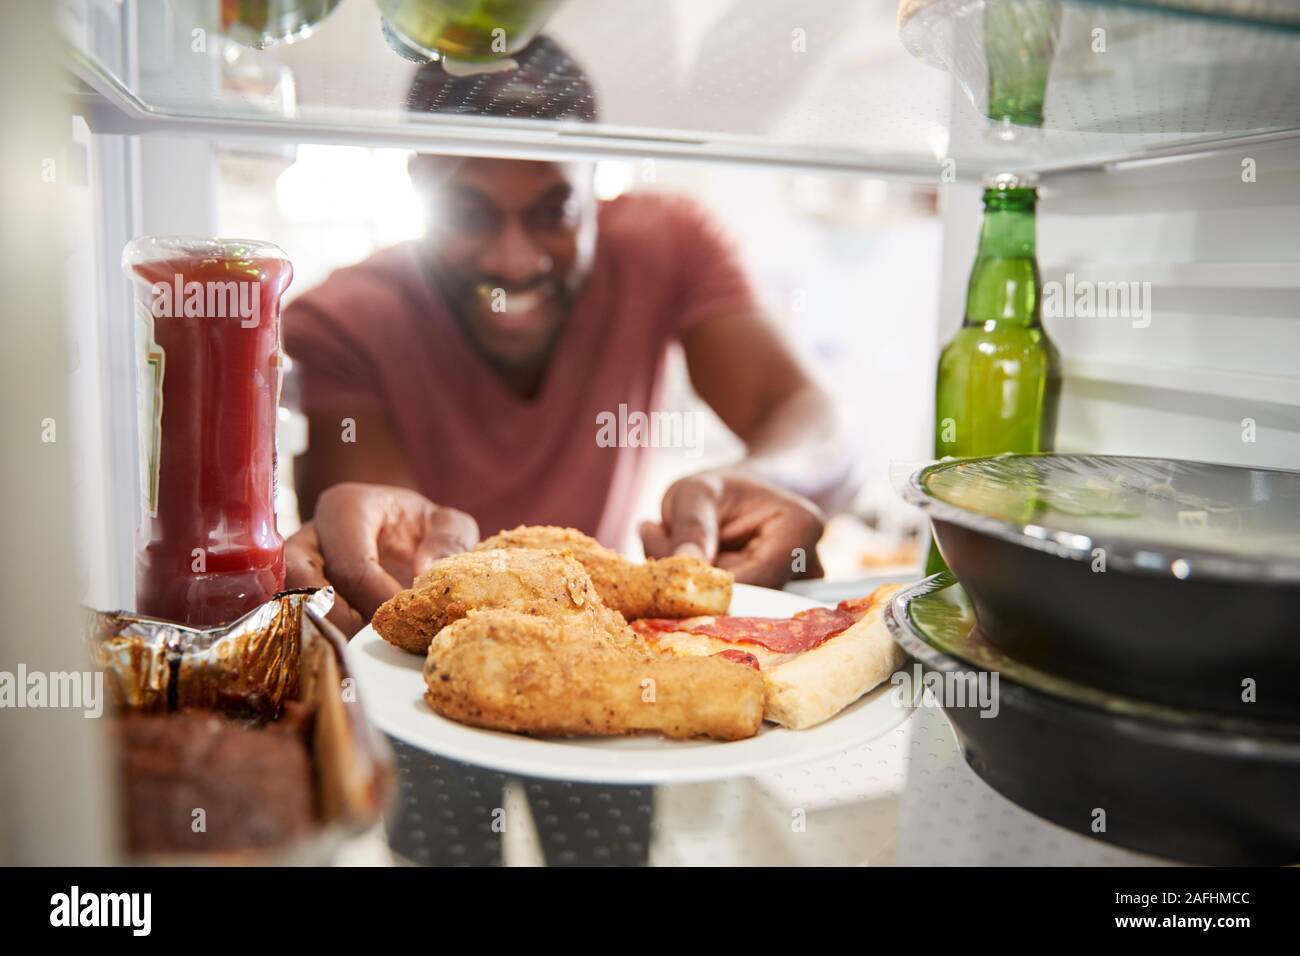 Vista dall'interno del frigorifero riempito con malsano cibo da asporto come uomo apre le porte Foto Stock